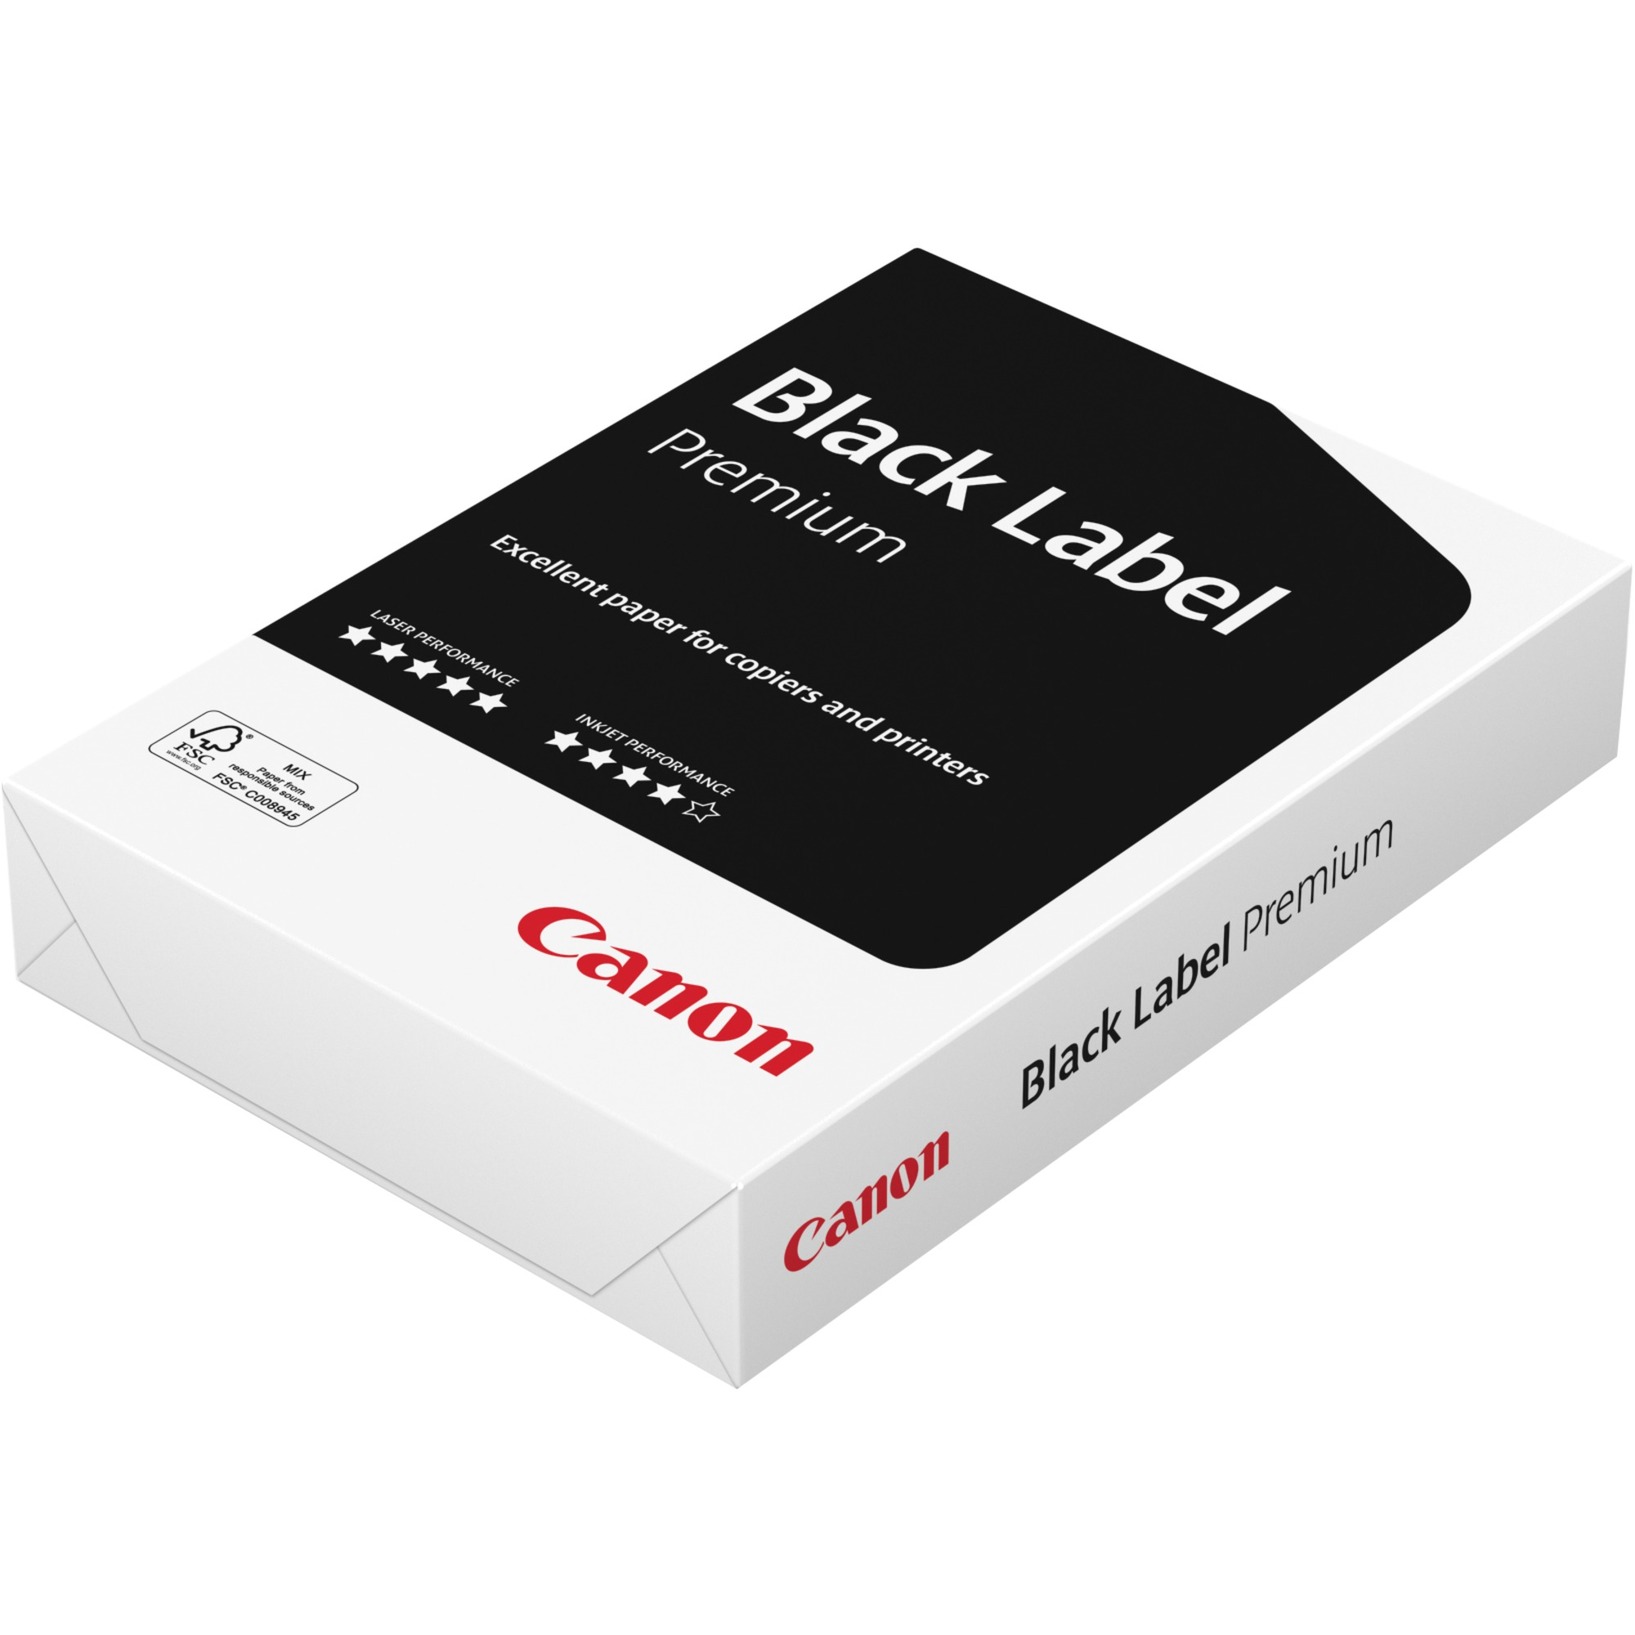 Image of Alternate - Black Label Premium (9808A016), Papier online einkaufen bei Alternate